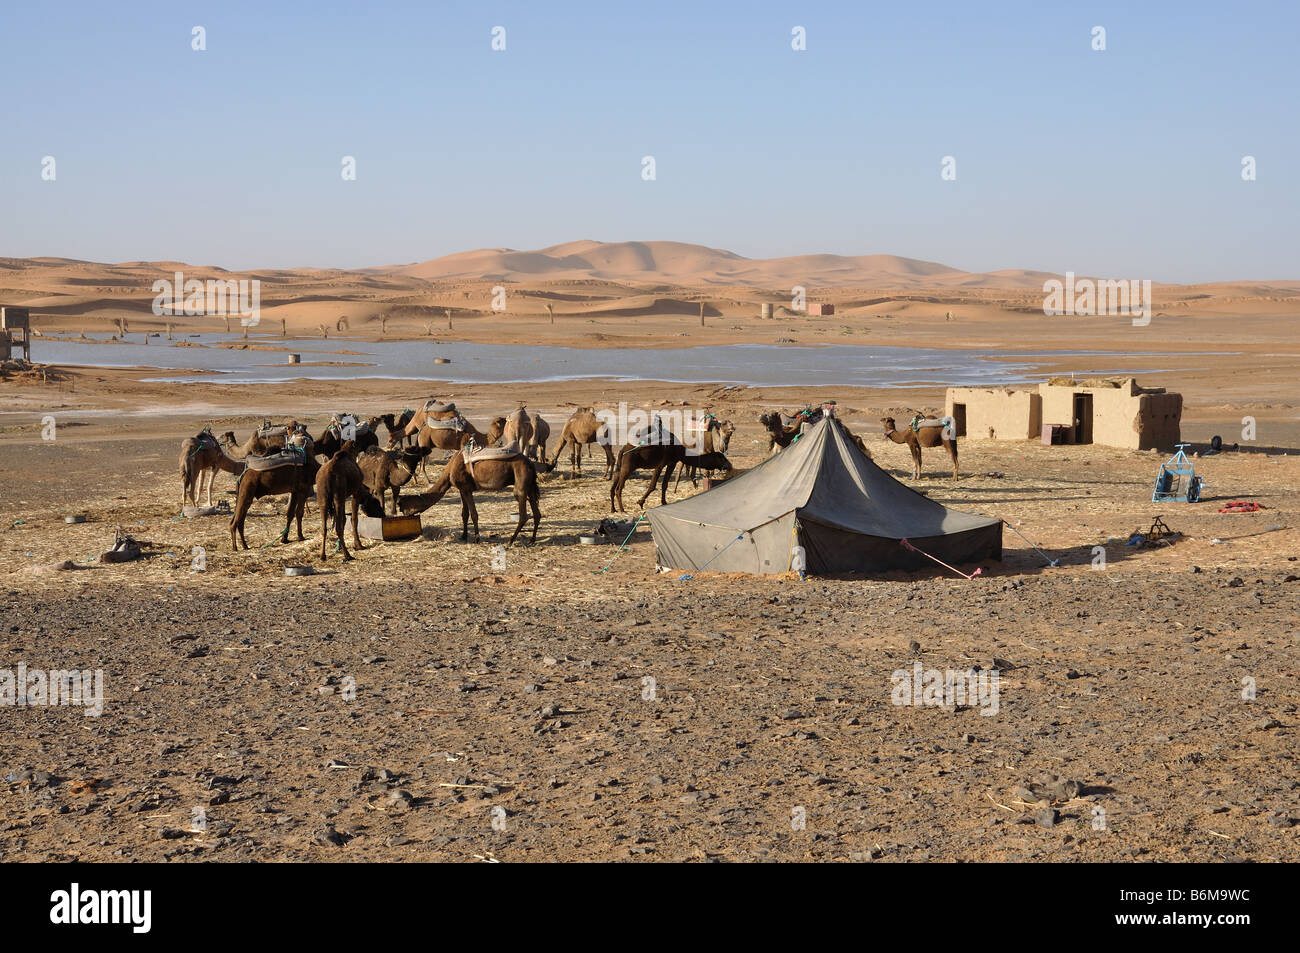 Les chameaux se nourrissent dans l'oasis, désert du Sahara Maroc Sud Banque D'Images